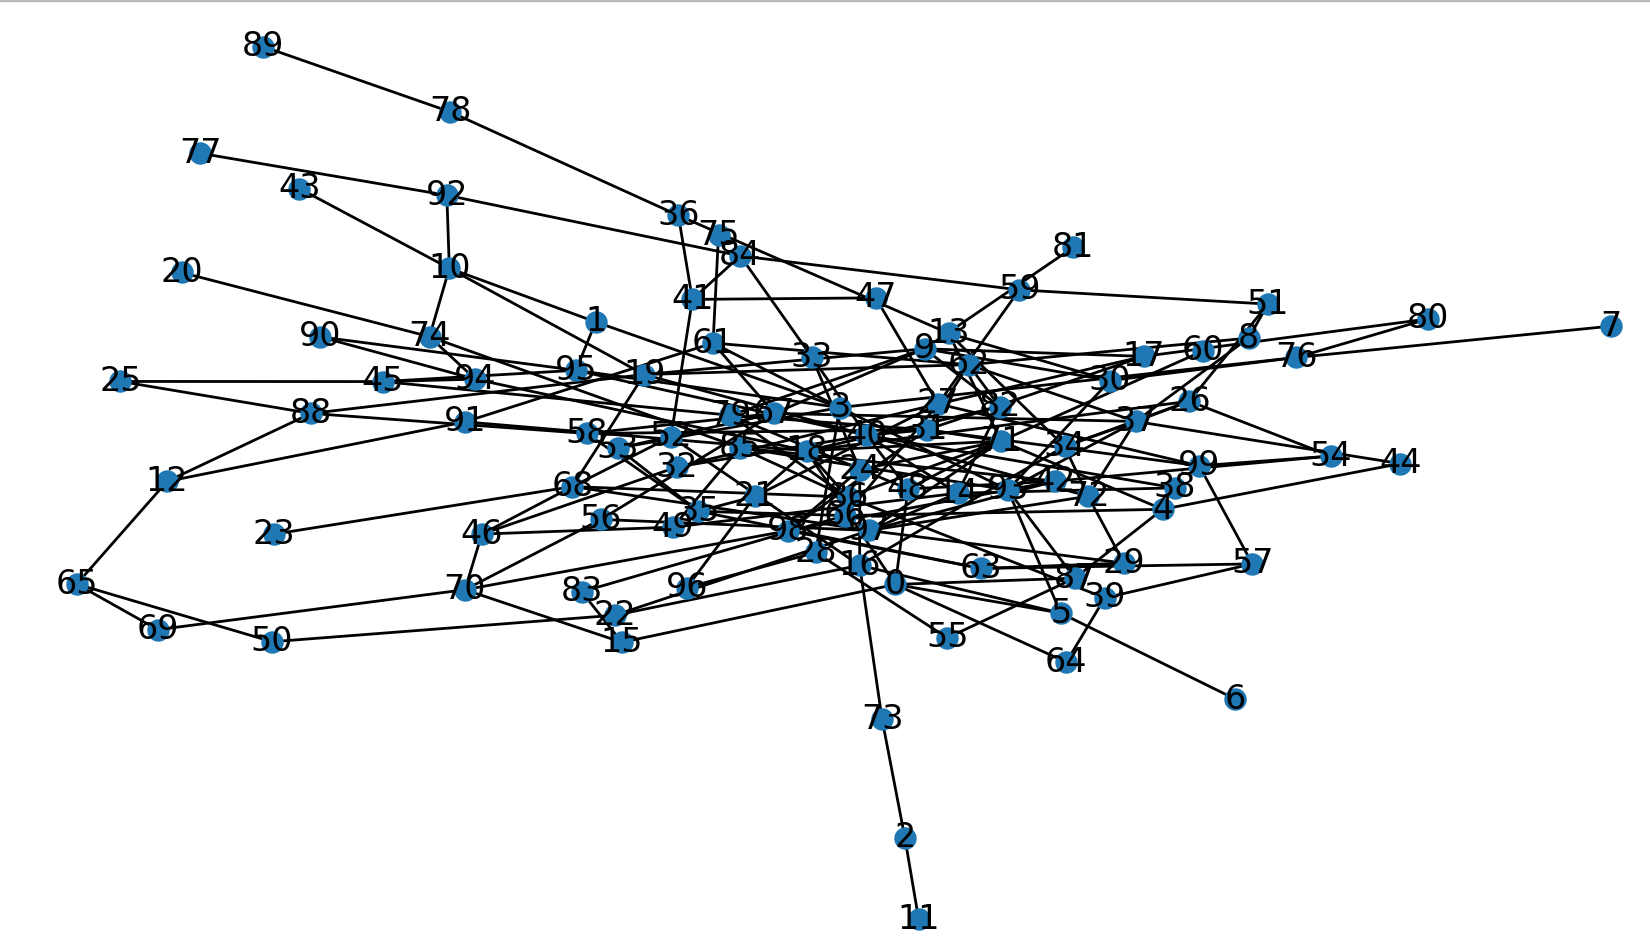 【复杂网络建模】——python通过平均度和随机概率构建ER网络